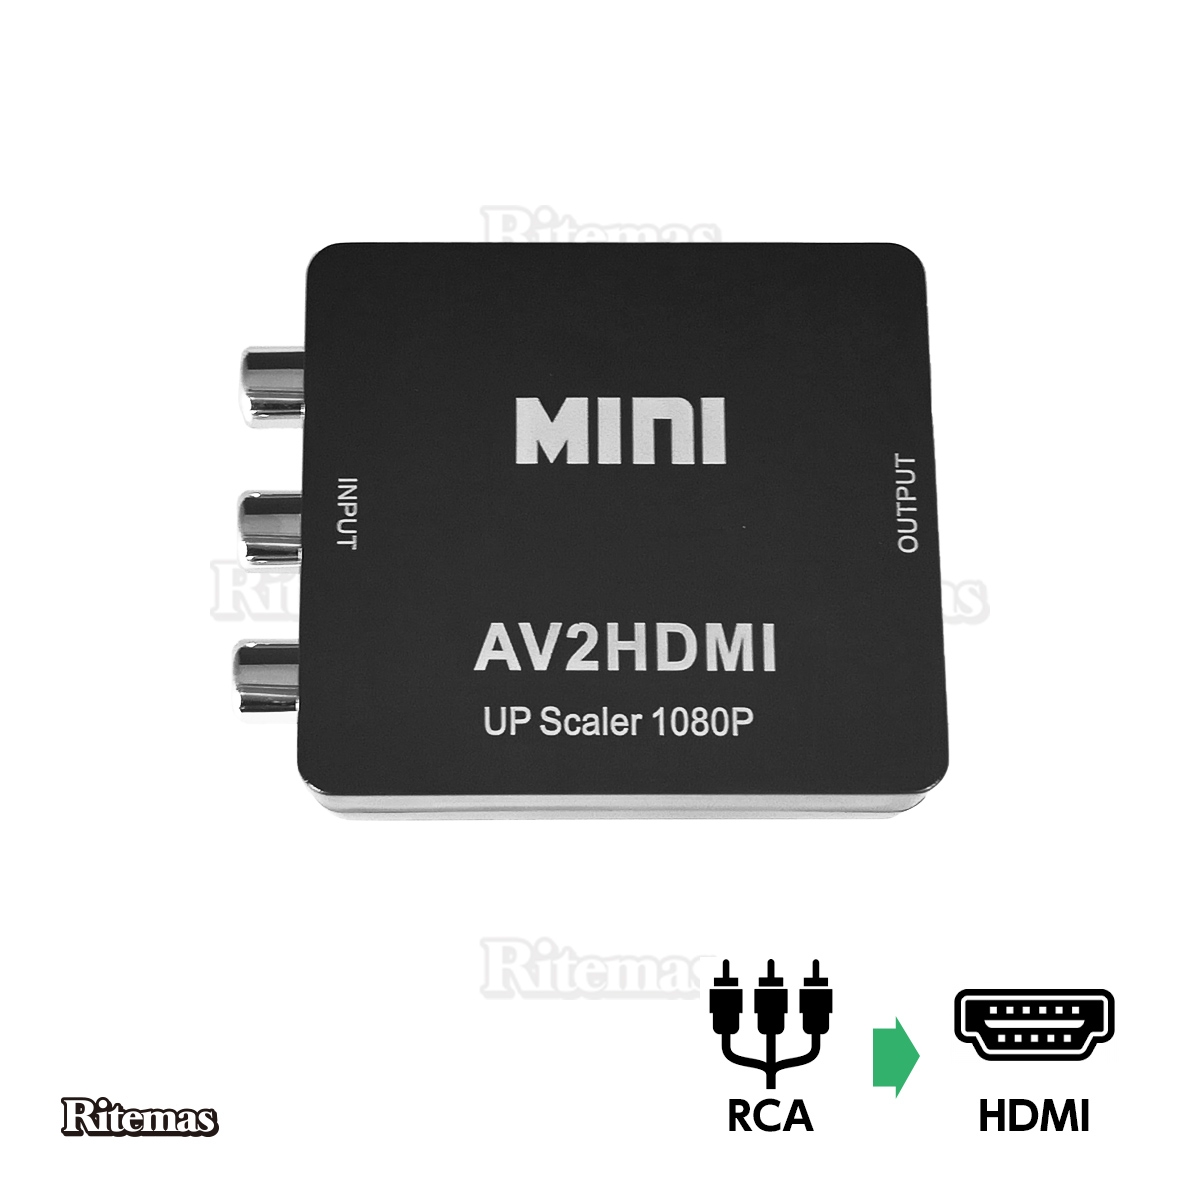 最大85%OFFクーポン RCA to HDMI変換コンバーター 変換器 コンバーター アダプター コネクター AV HDMI AVケーブル 変換  hdmi コンポジットをHDMIに変換アダプタ コンポジット入力 hdmi出力 AV2HDMI USBケーブル付き 音声転送 高解像度 1080p  720p 1080P対応 ...